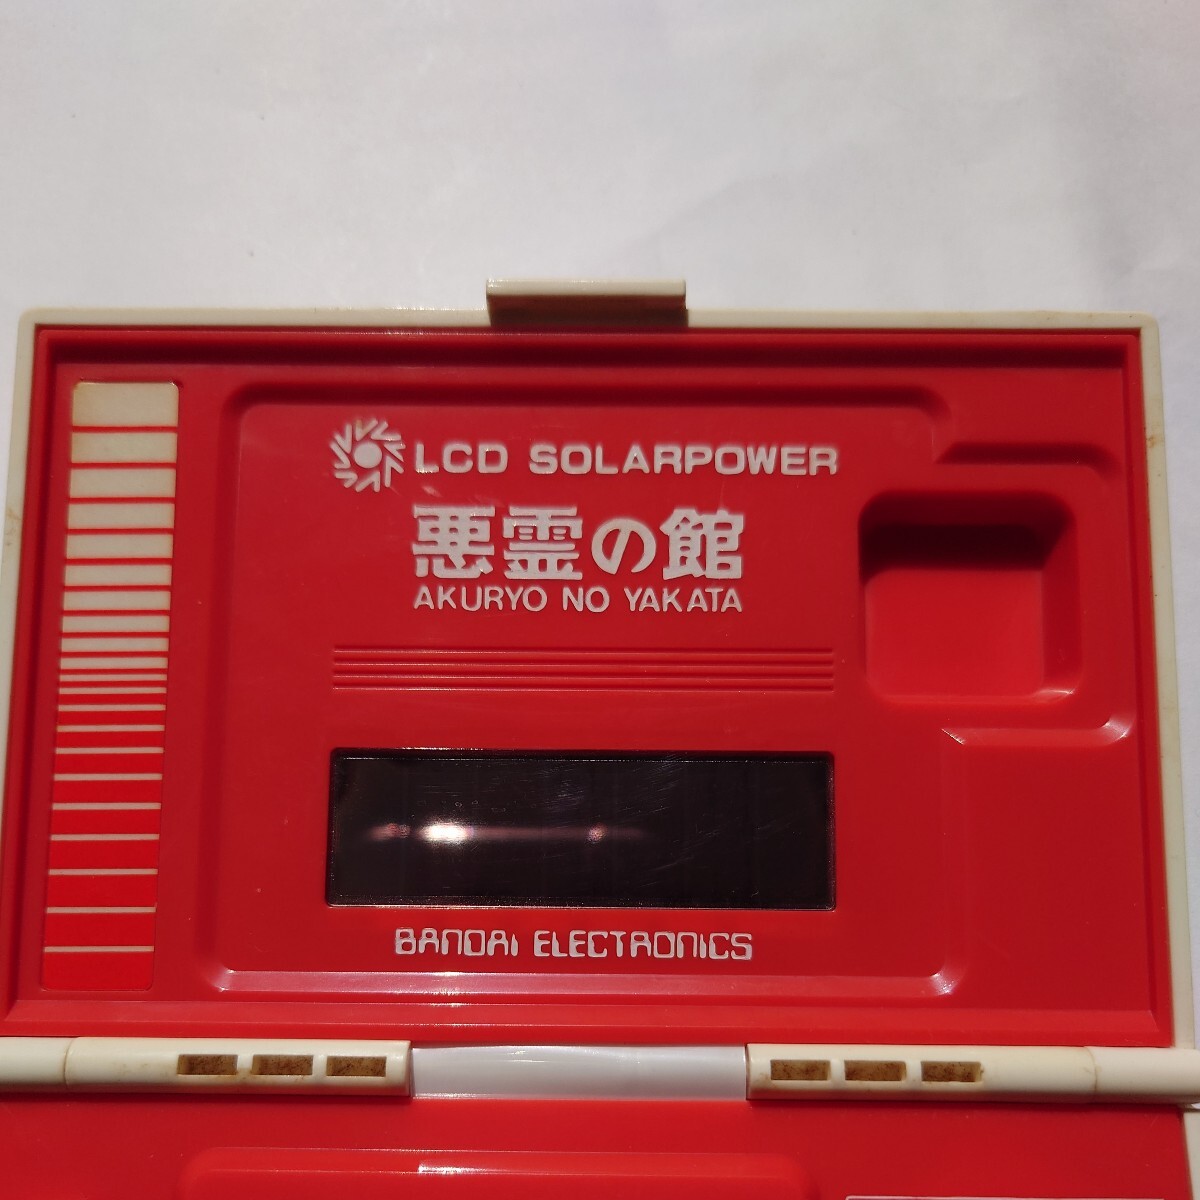 昭和レトロゲーム機「悪霊の館」ソーラーバッテリー仕様 (LCD SOLARPOWER) バンダイ MADE IN JAPAN ゲームウォッチの画像3